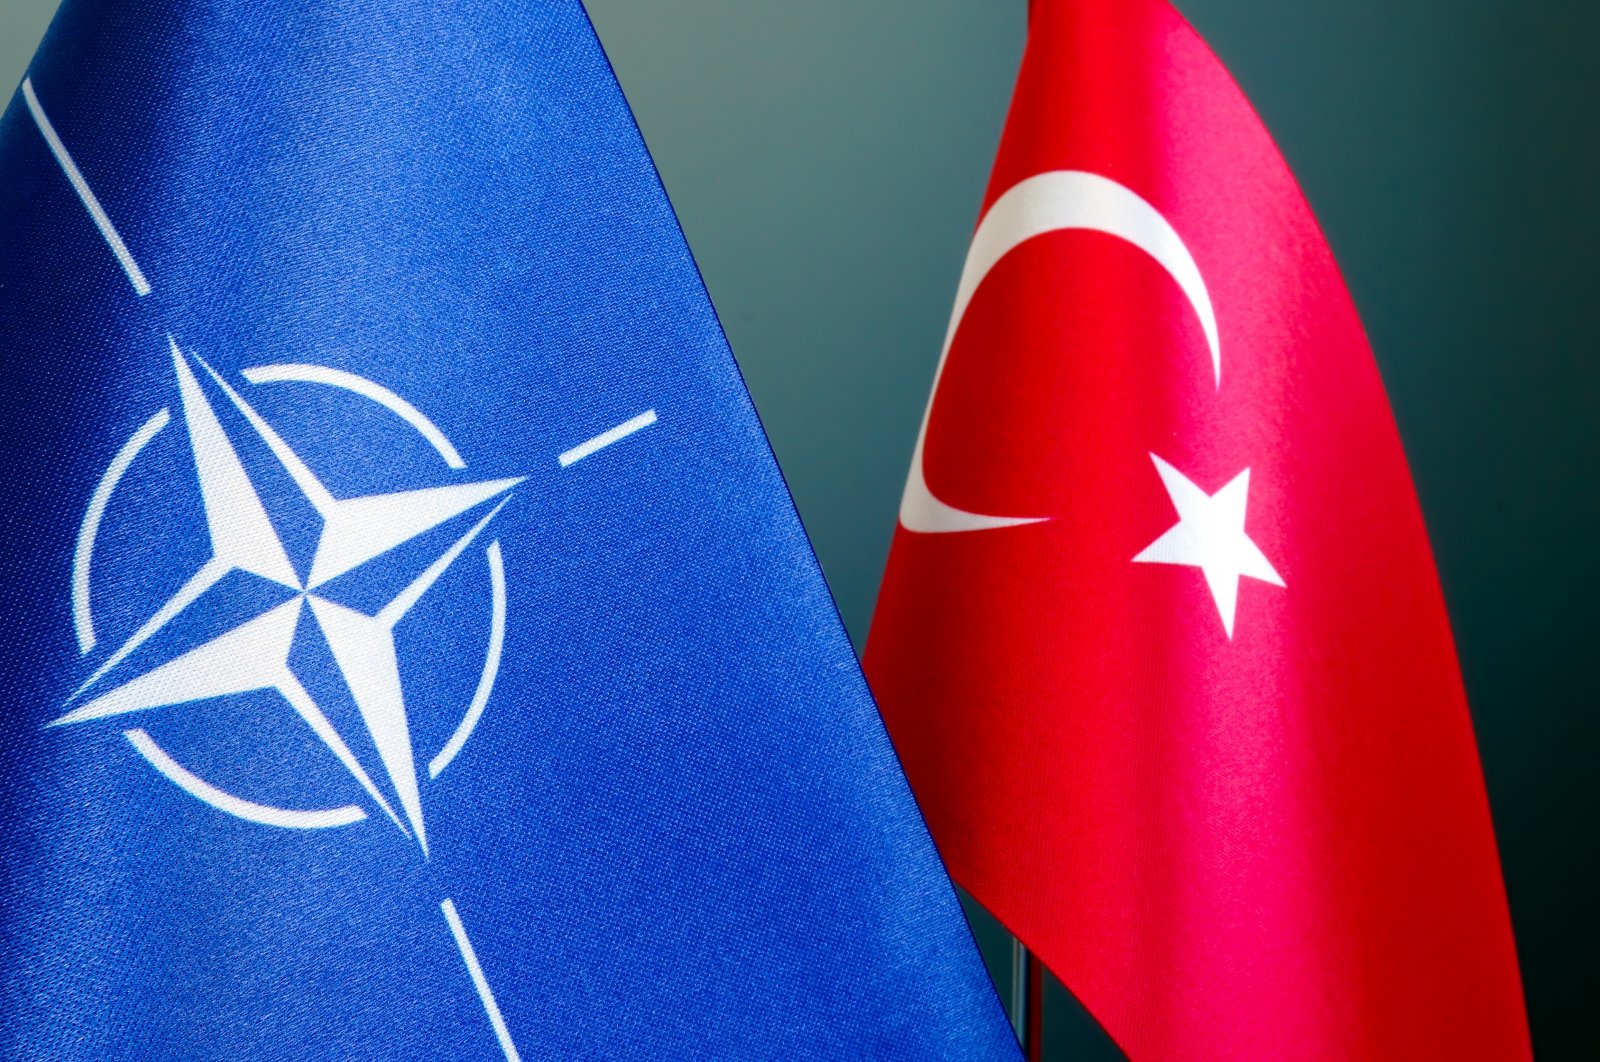 Tanpa Türkiye, NATO hanyalah ‘manusia jerami’